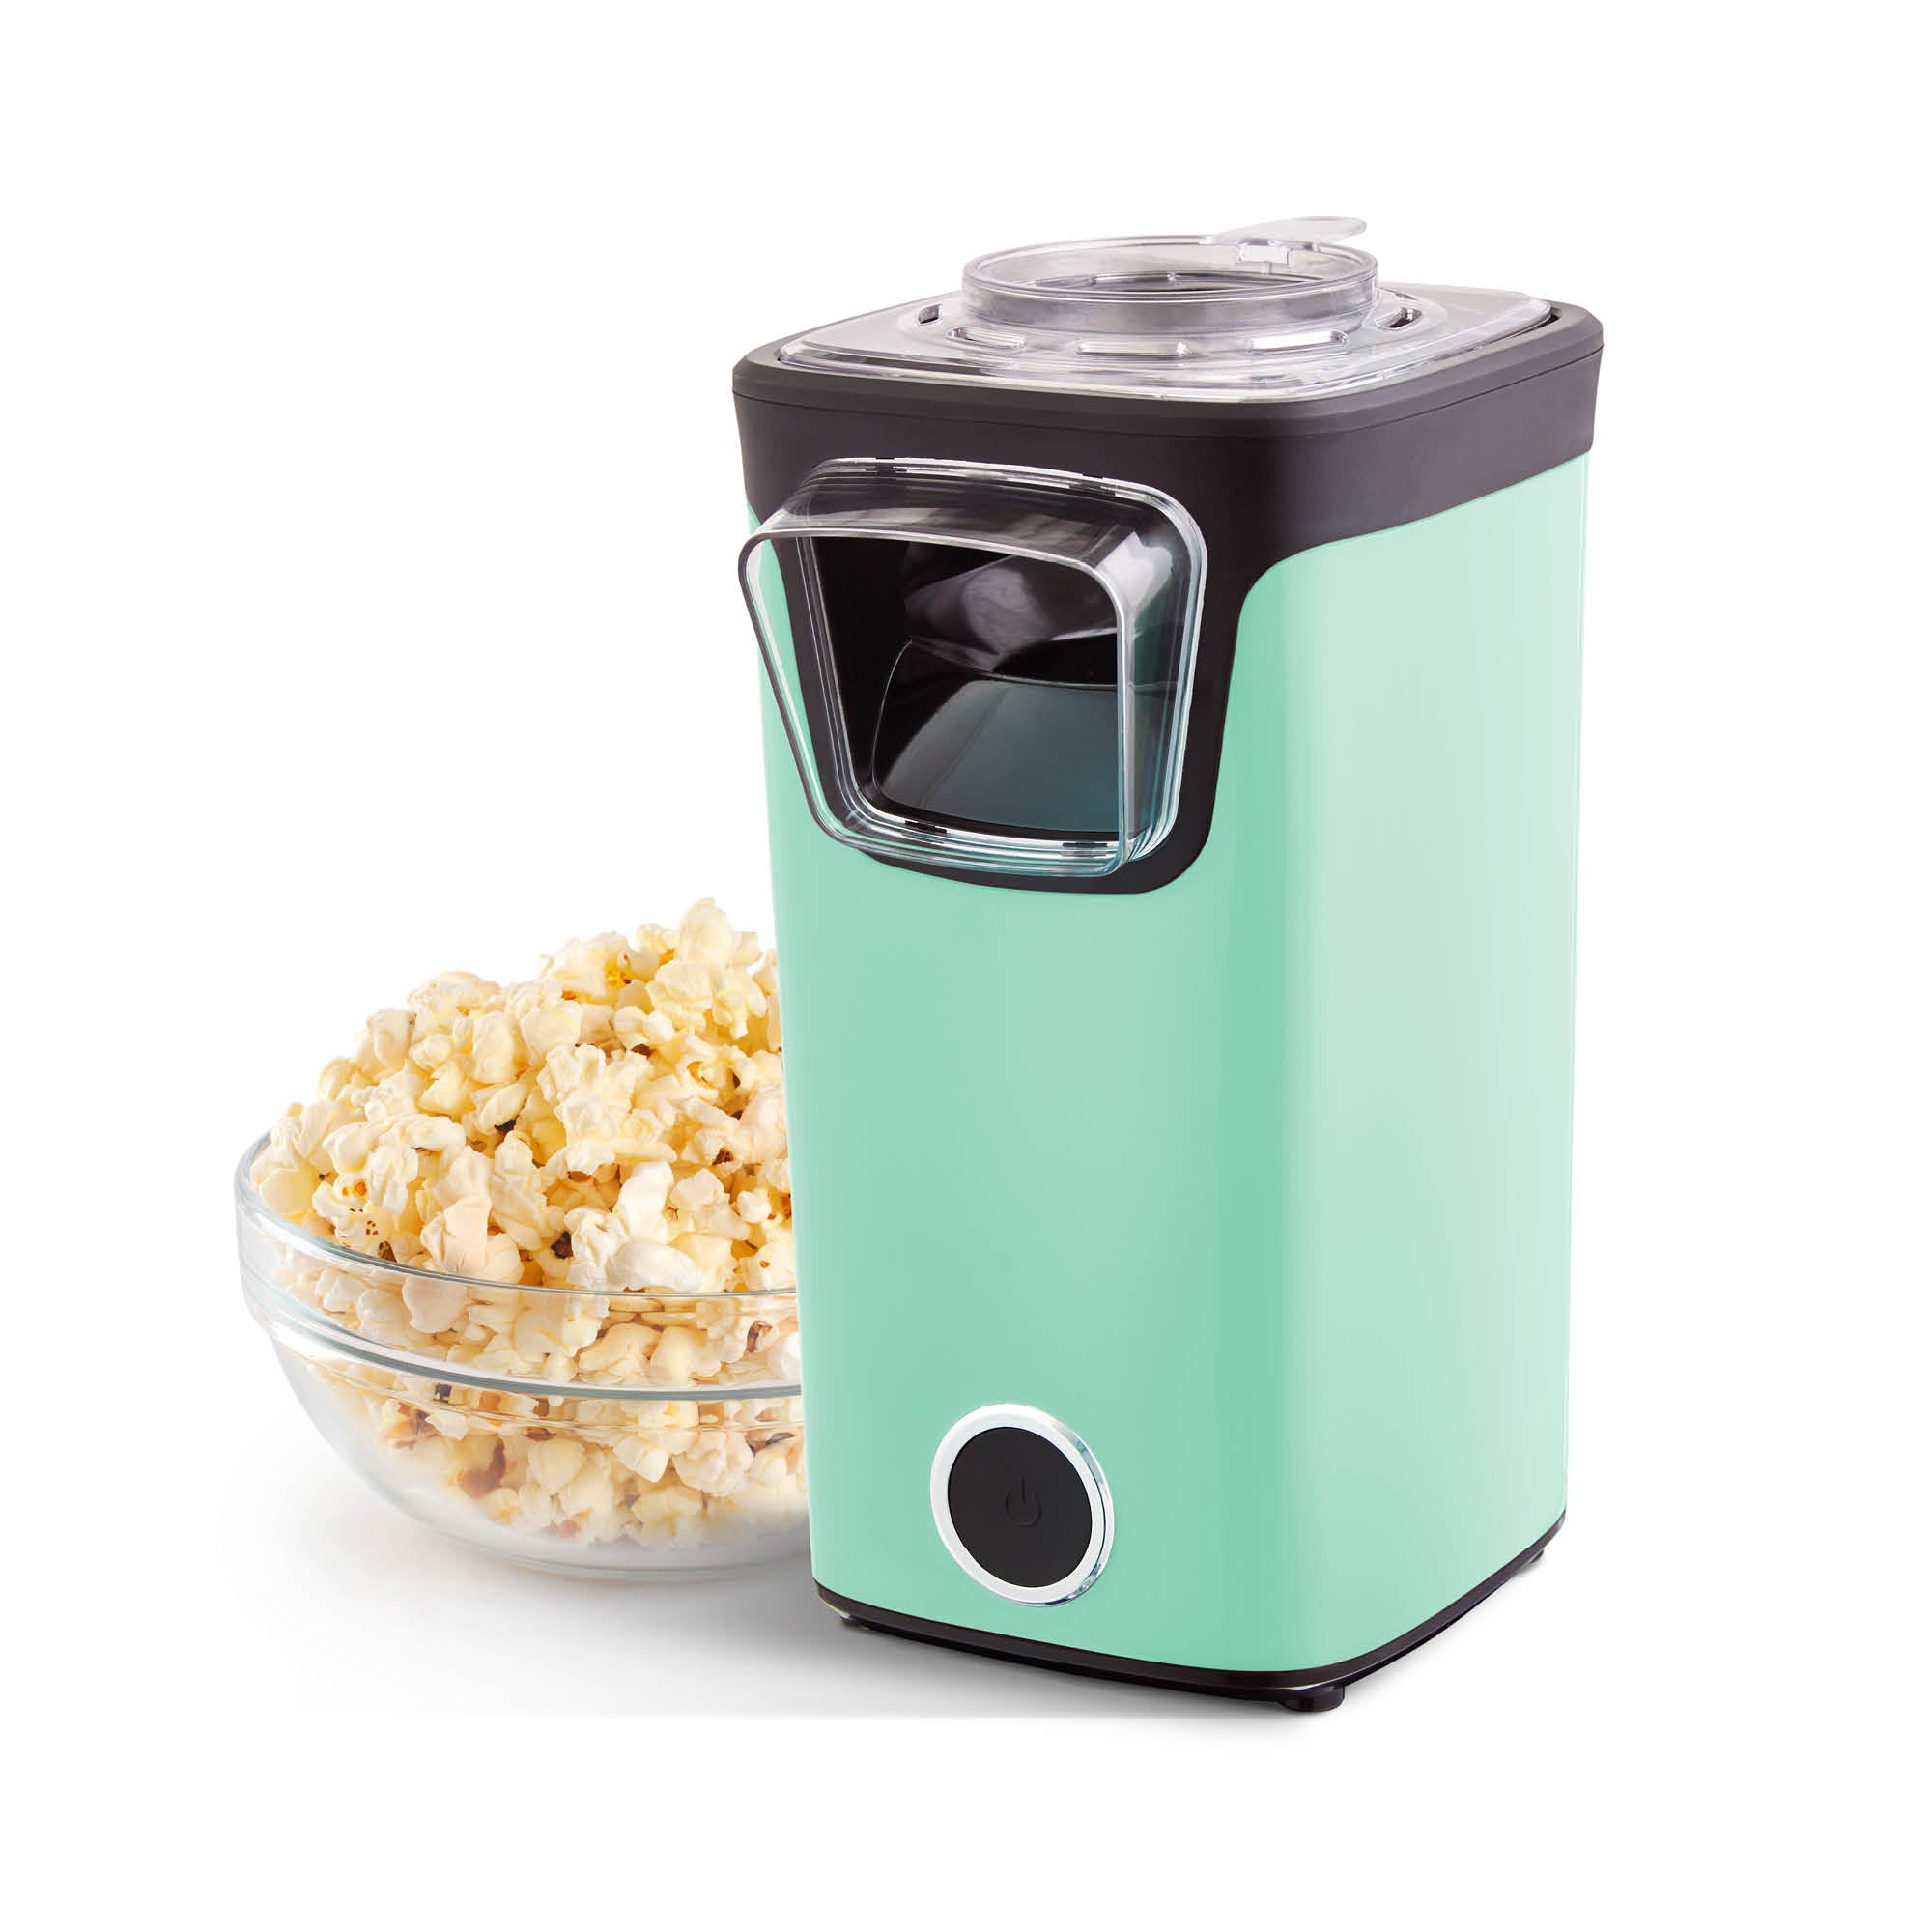 Dash fresh pop popcorn maker White New Open Box